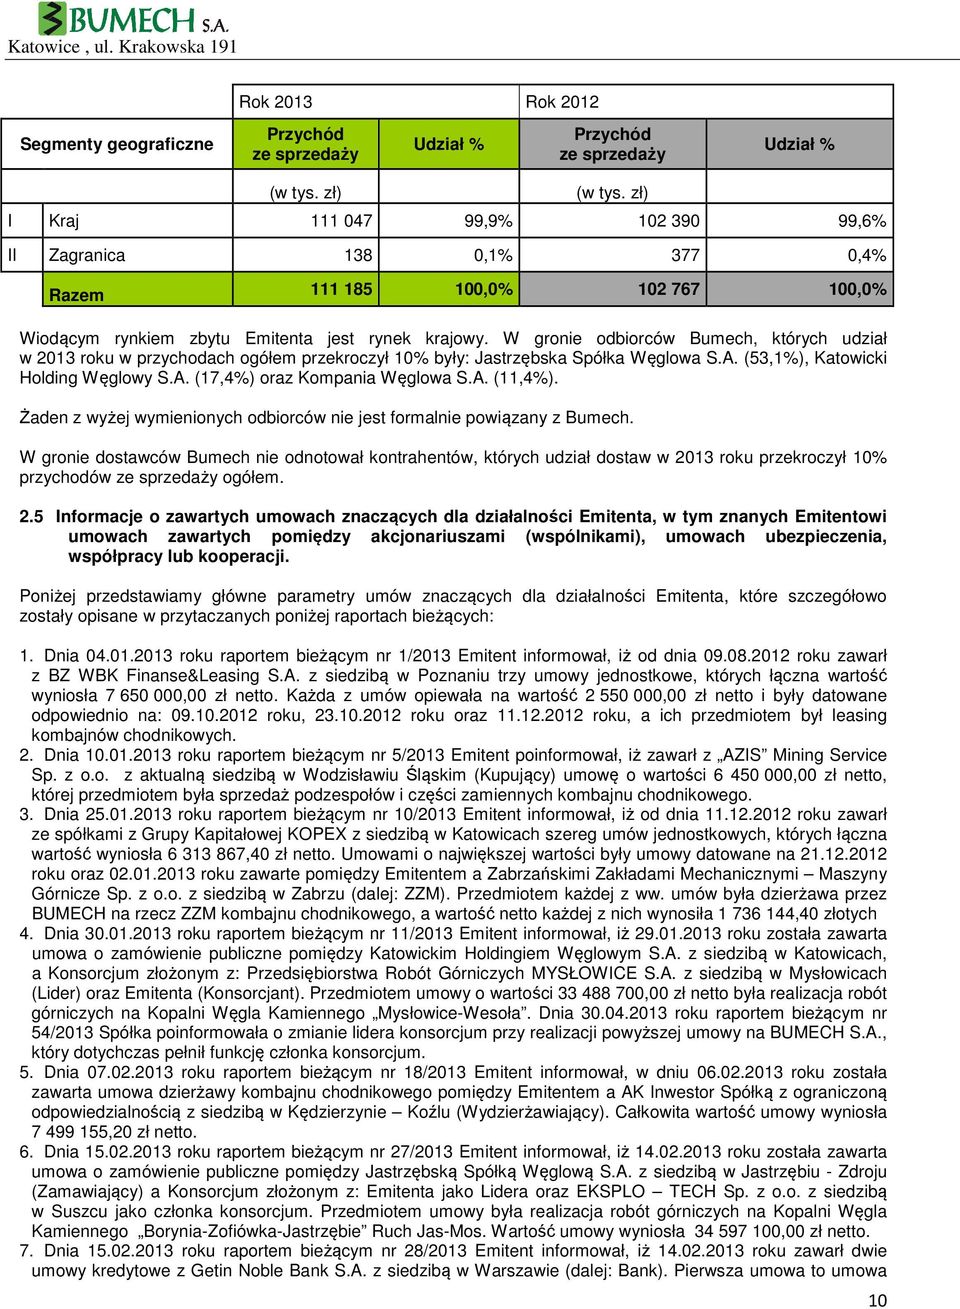 W gronie odbiorców Bumech, których udział w 2013 roku w przychodach ogółem przekroczył 10% były: Jastrzębska Spółka Węglowa S.A. (53,1%), Katowicki Holding Węglowy S.A. (17,4%) oraz Kompania Węglowa S.